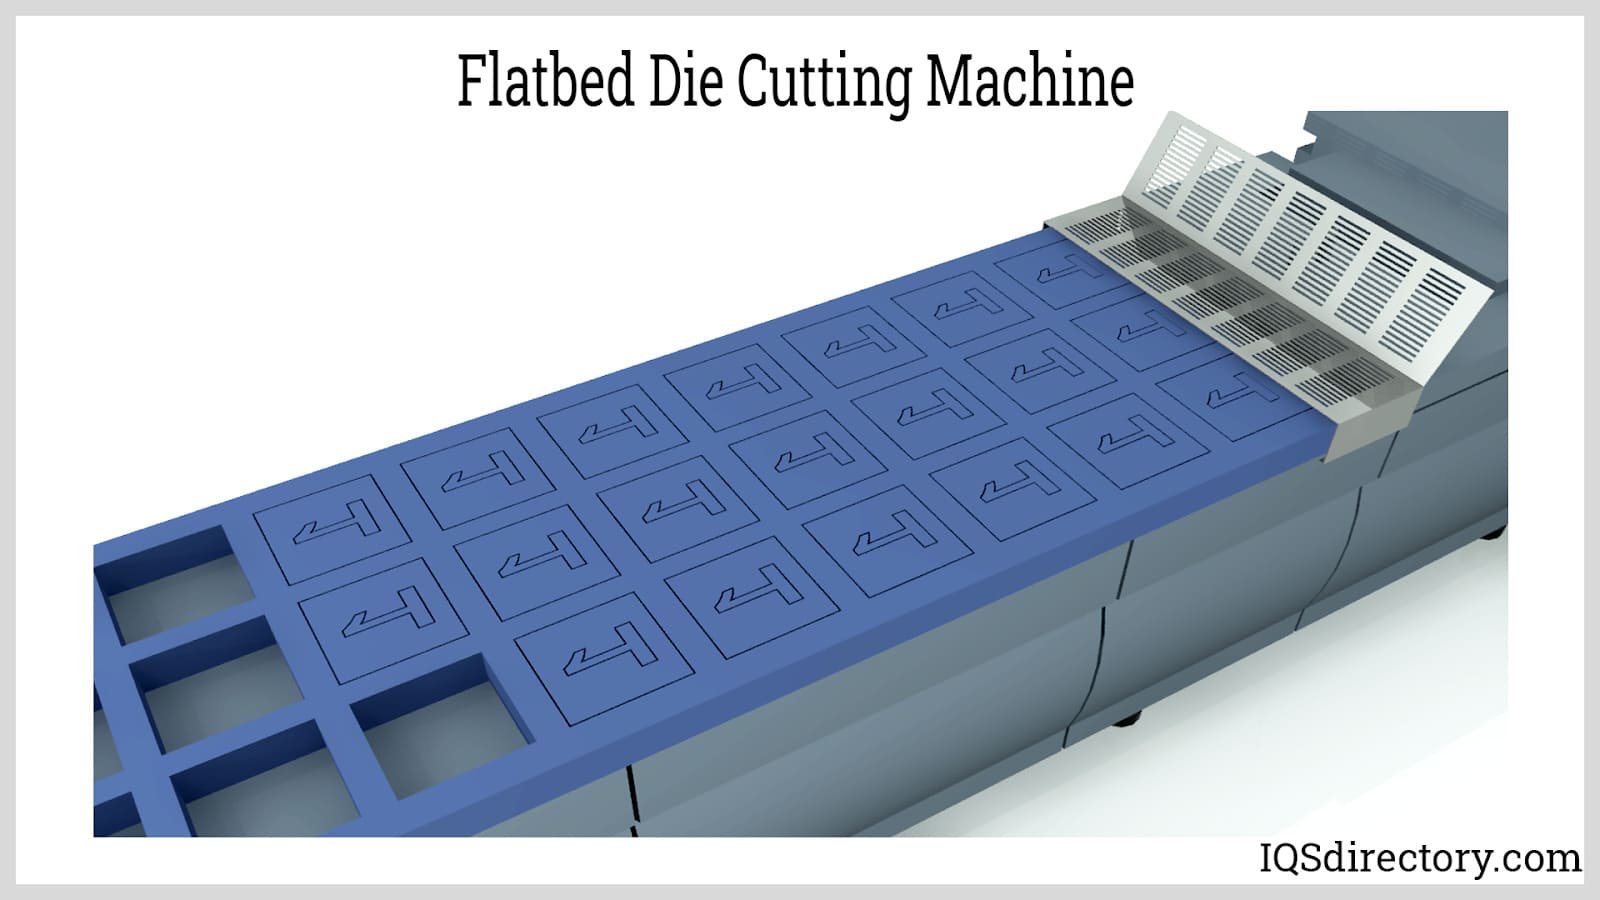 Flatbed Die Cutting Machine